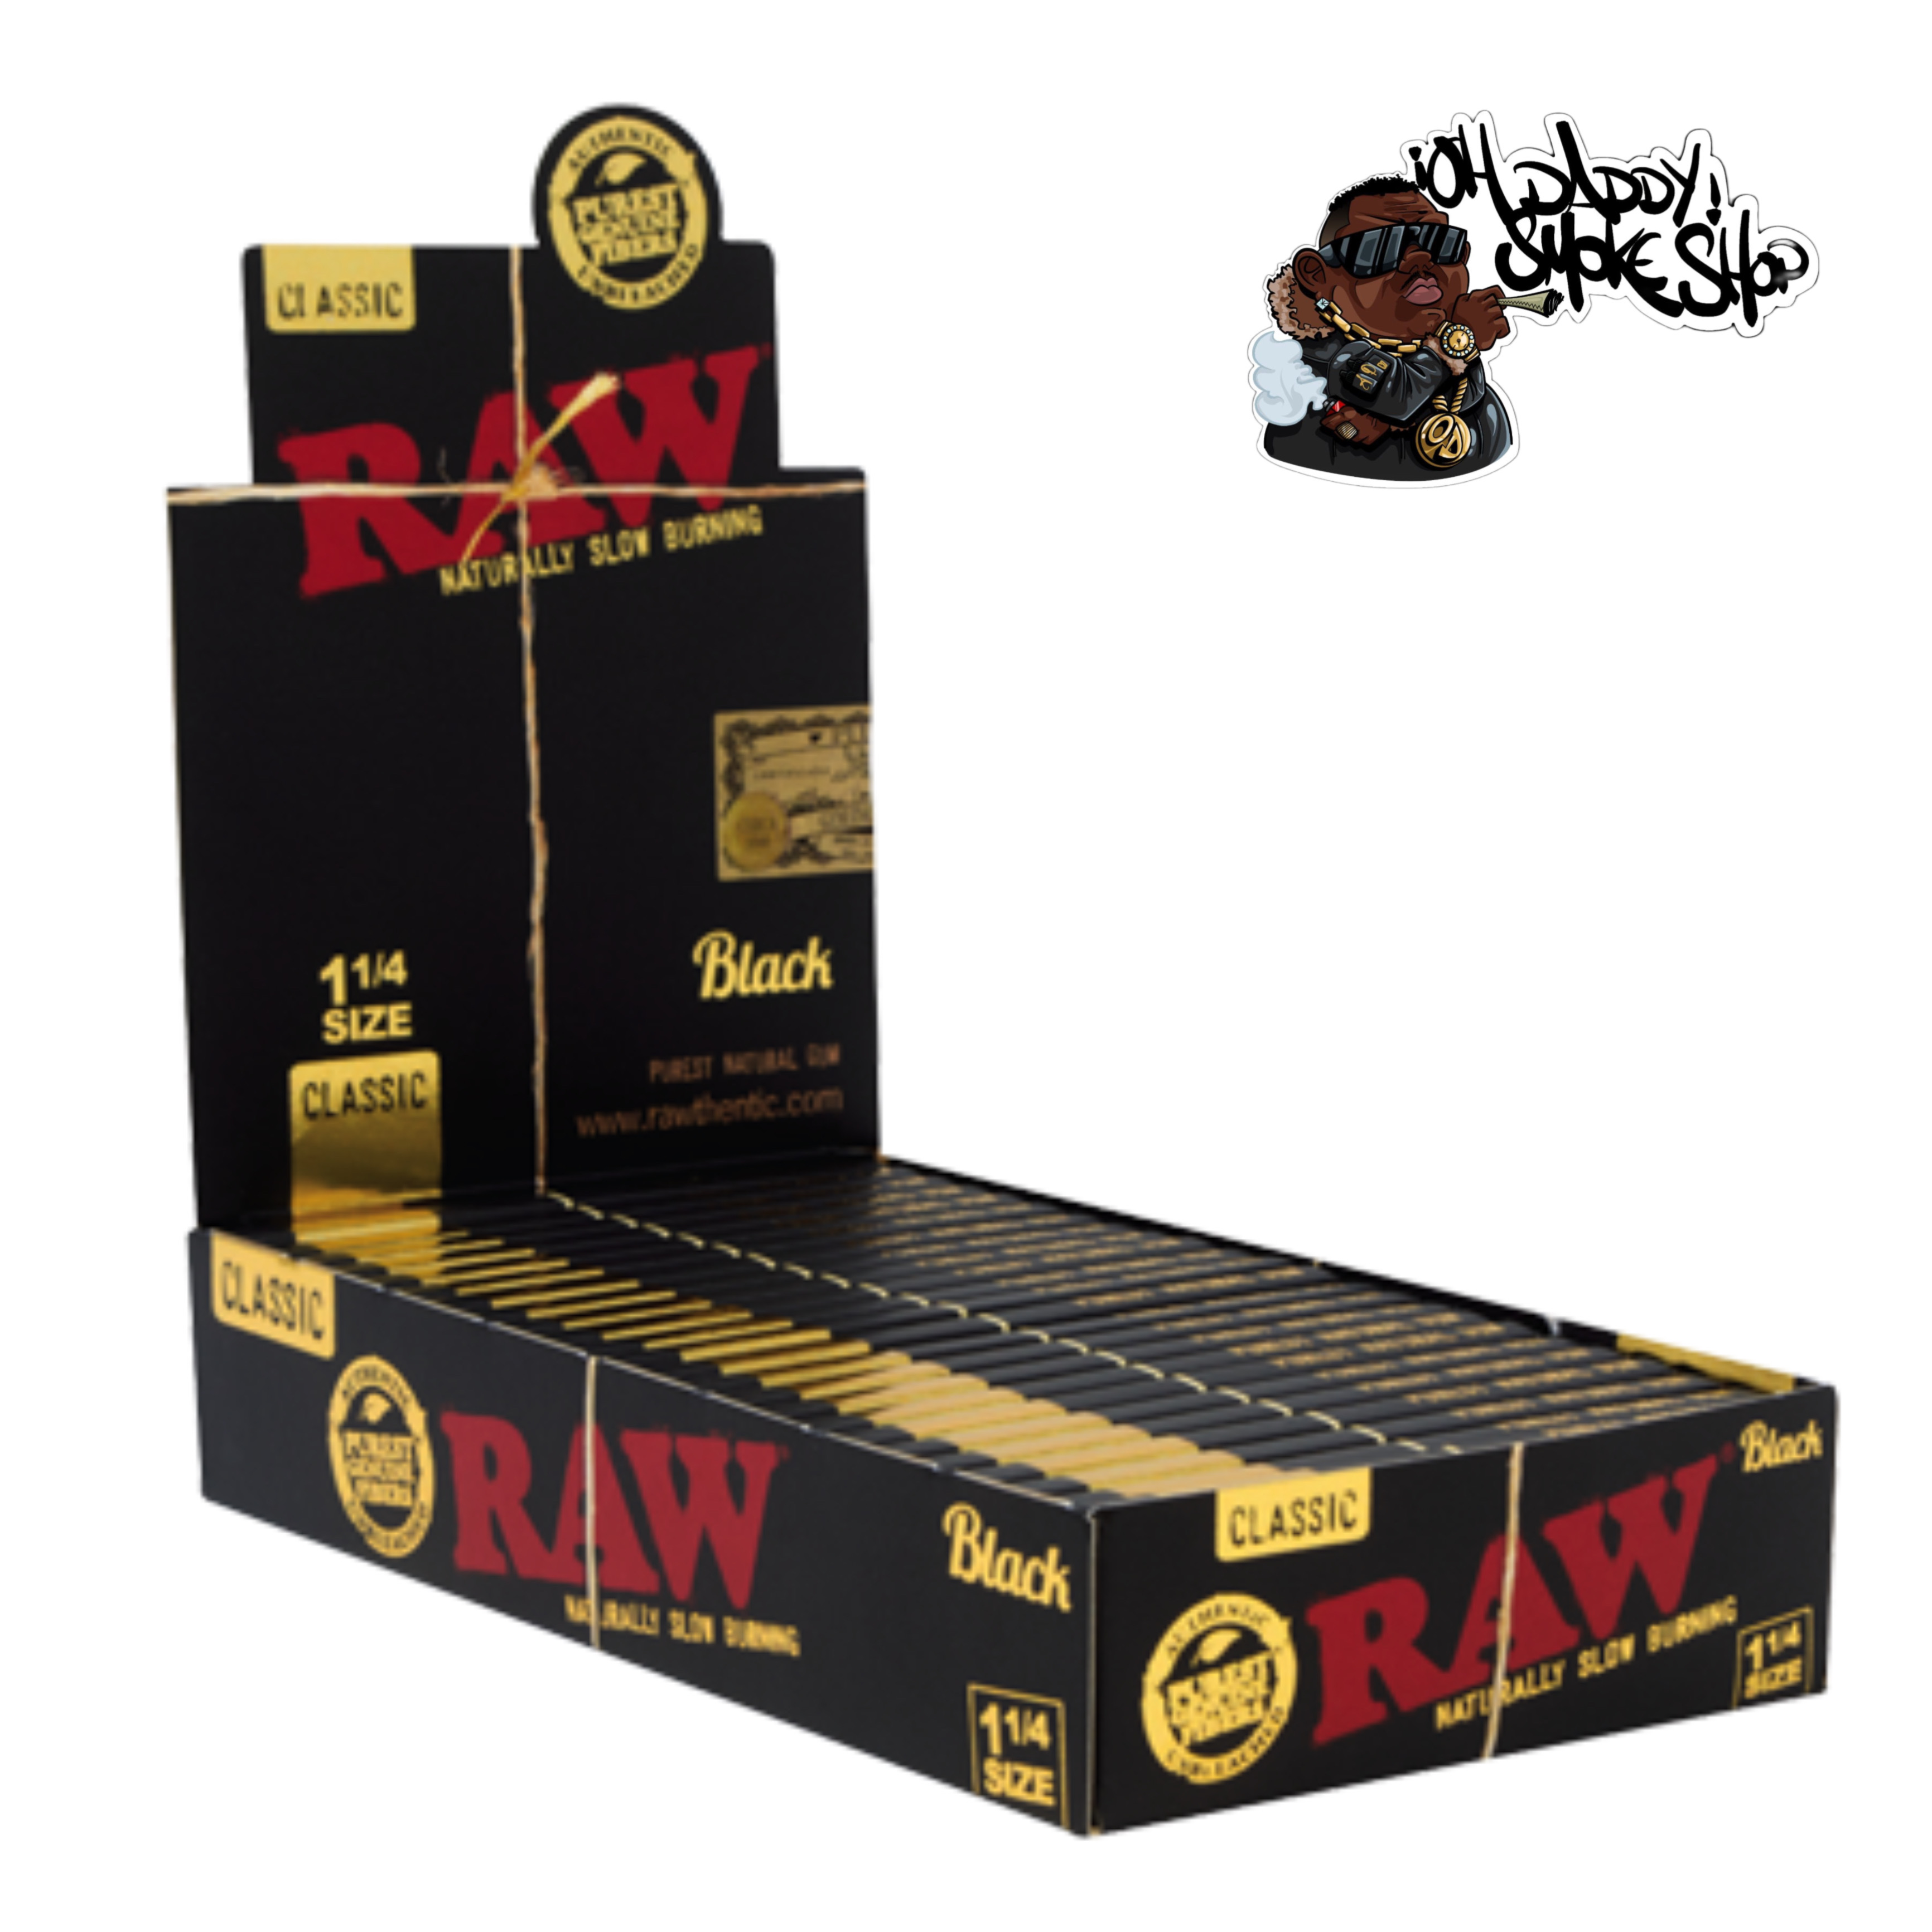 Caja Raw Black 1 1/4